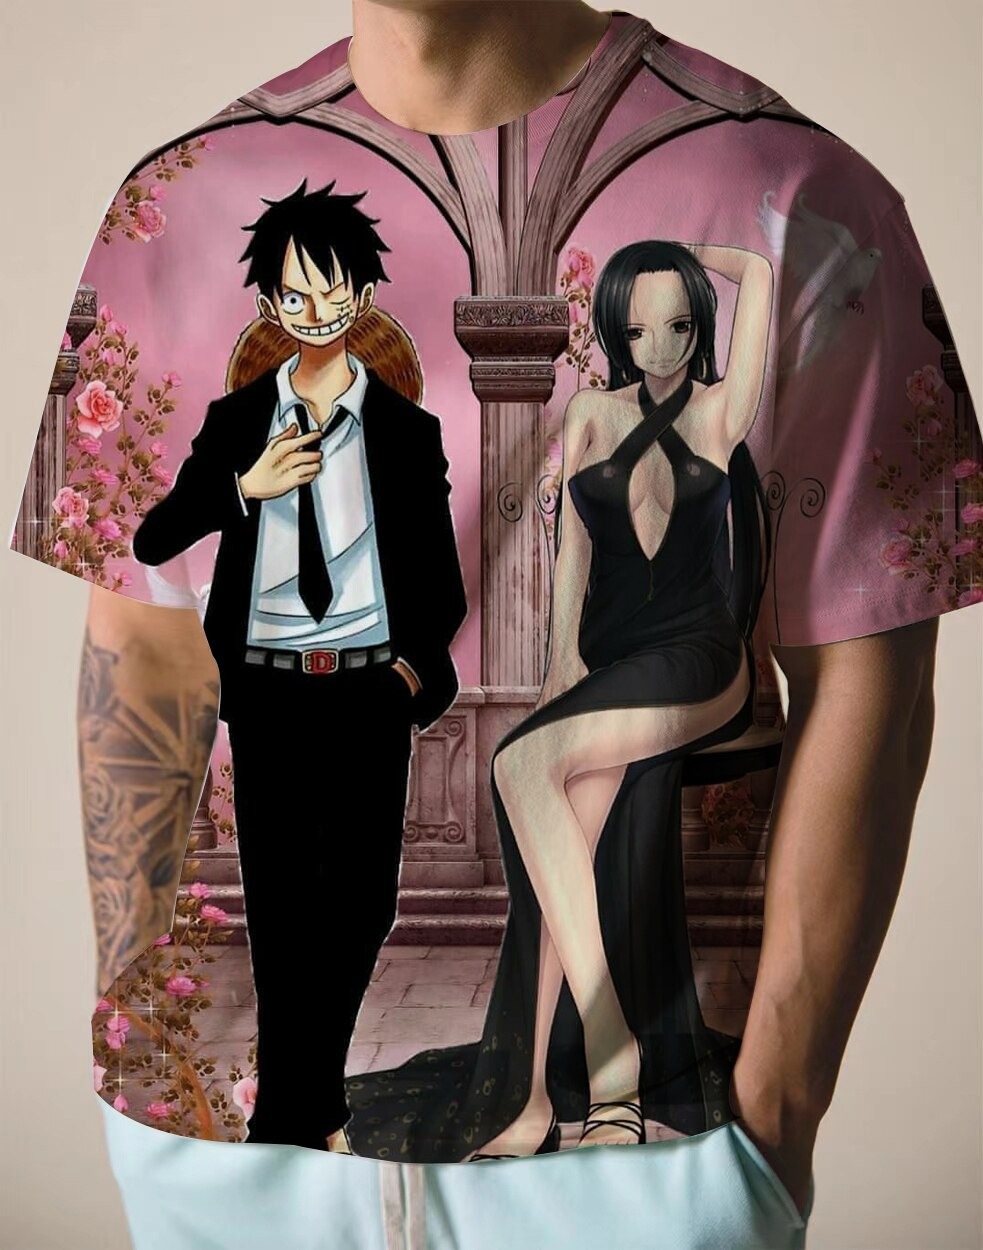 One Piece Apparel - Official Merchandise & Unique Designs, one piece 